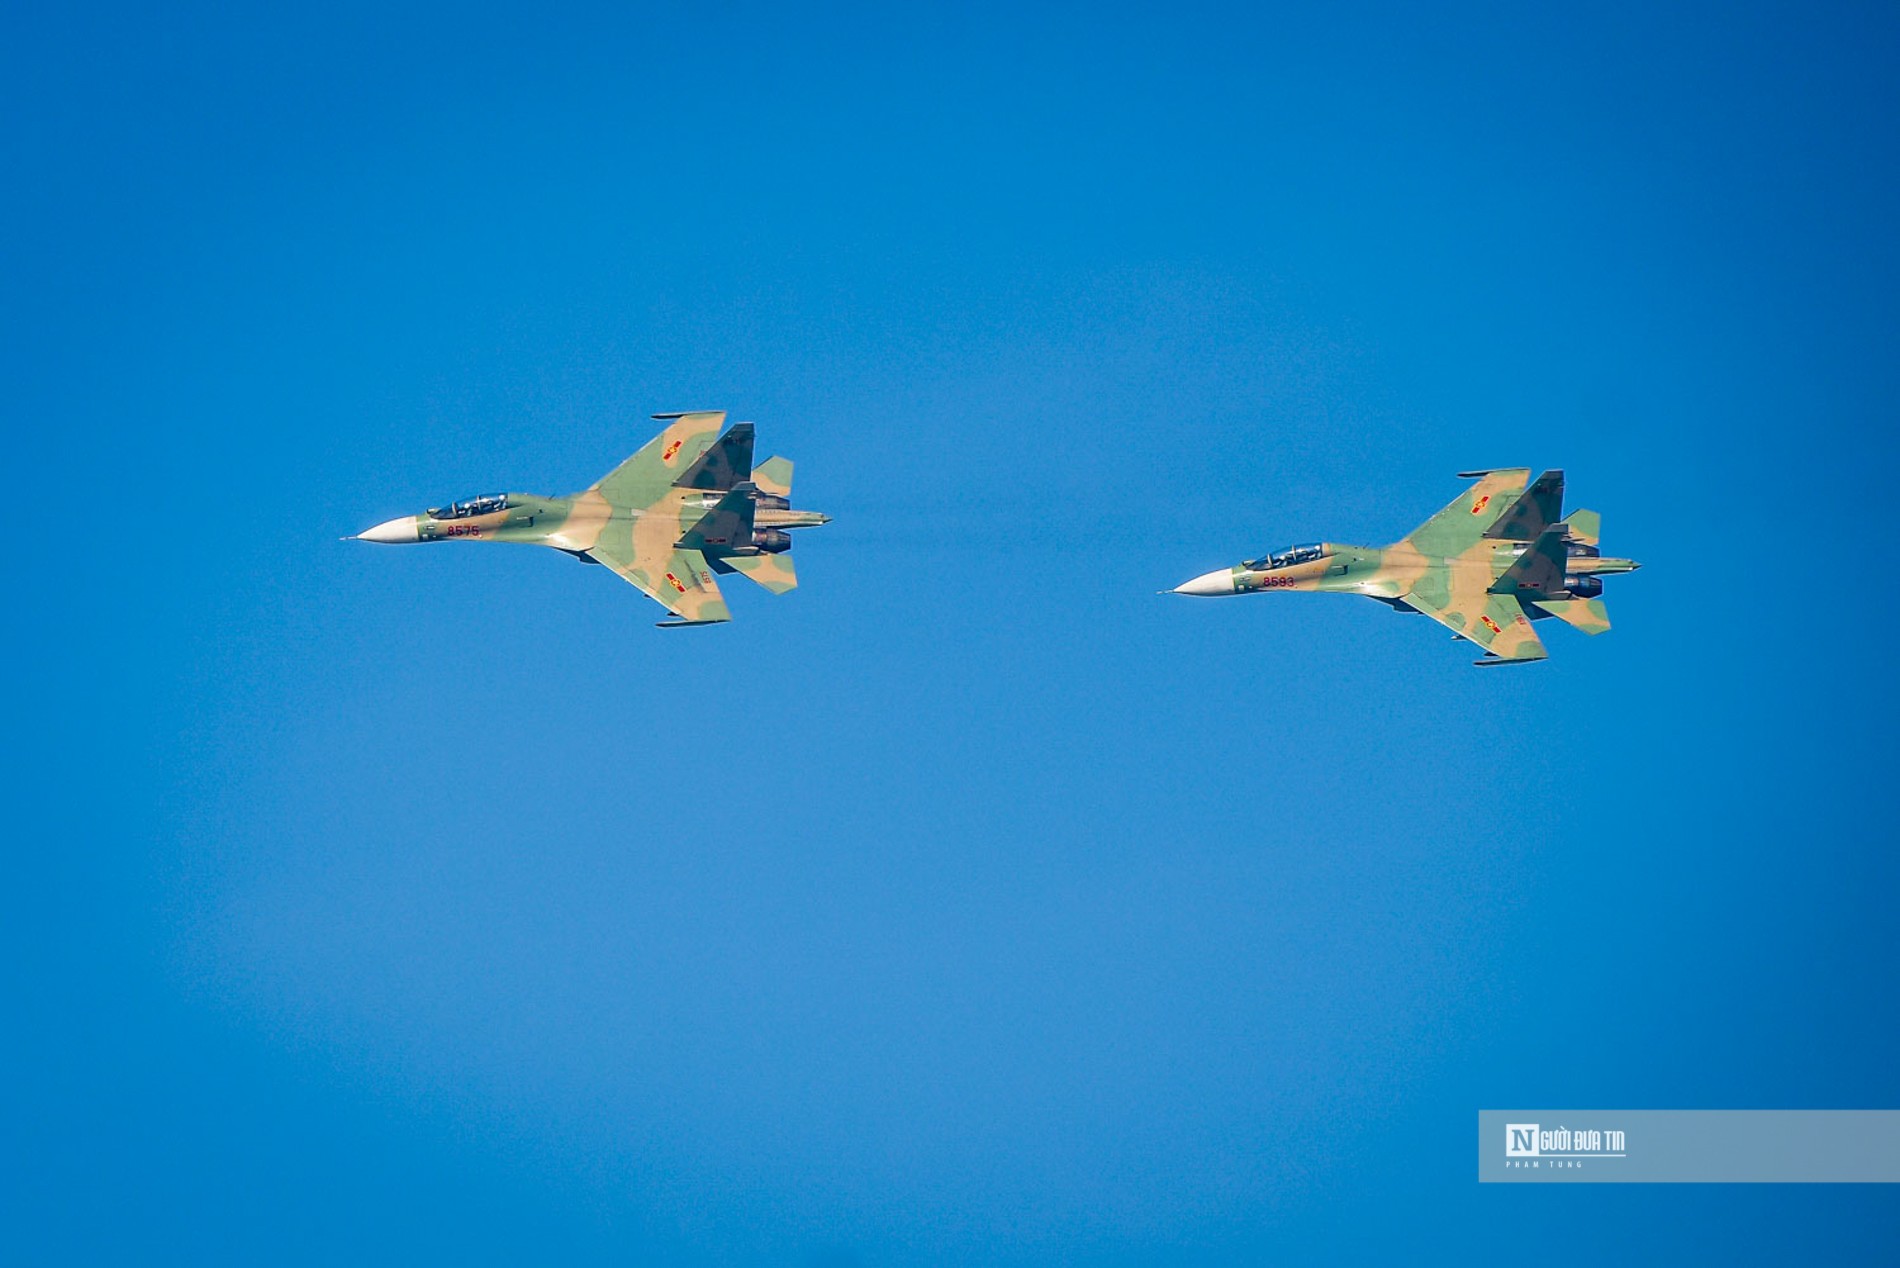 Quân sự - Hà Nội: Bất ngờ siêu cơ Su-30MK2 bay lượn trên bầu trời (Hình 4).